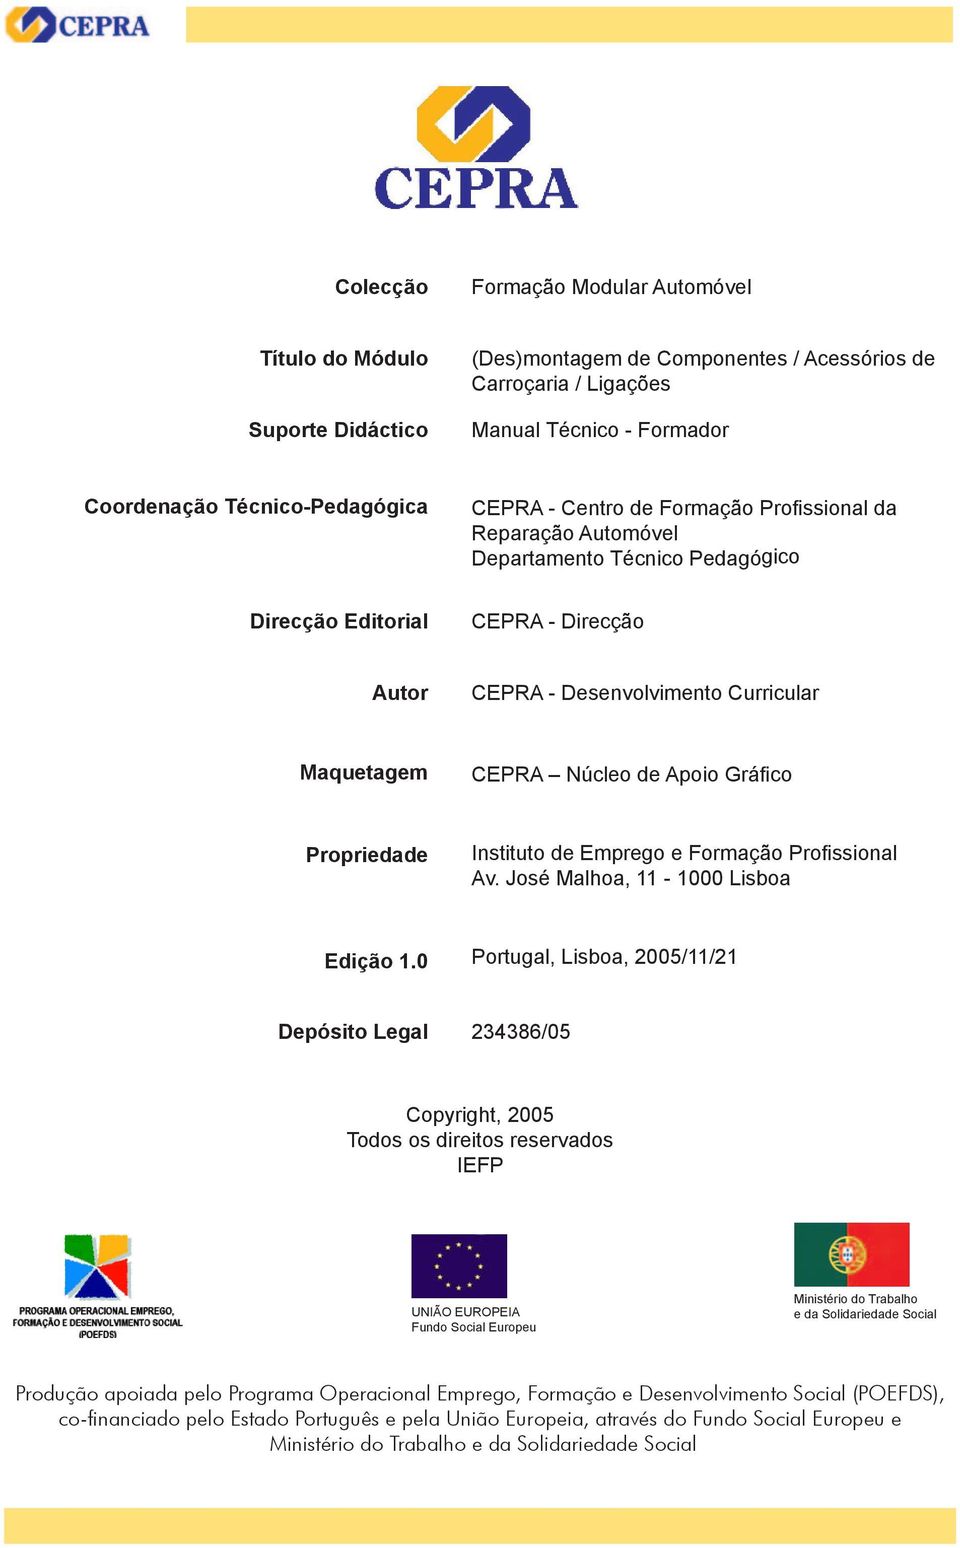 Apoio Gráfico Propriedade Instituto de Emprego e Formação Profissional Av. José Malhoa, 11-1000 Lisboa Edição 1.